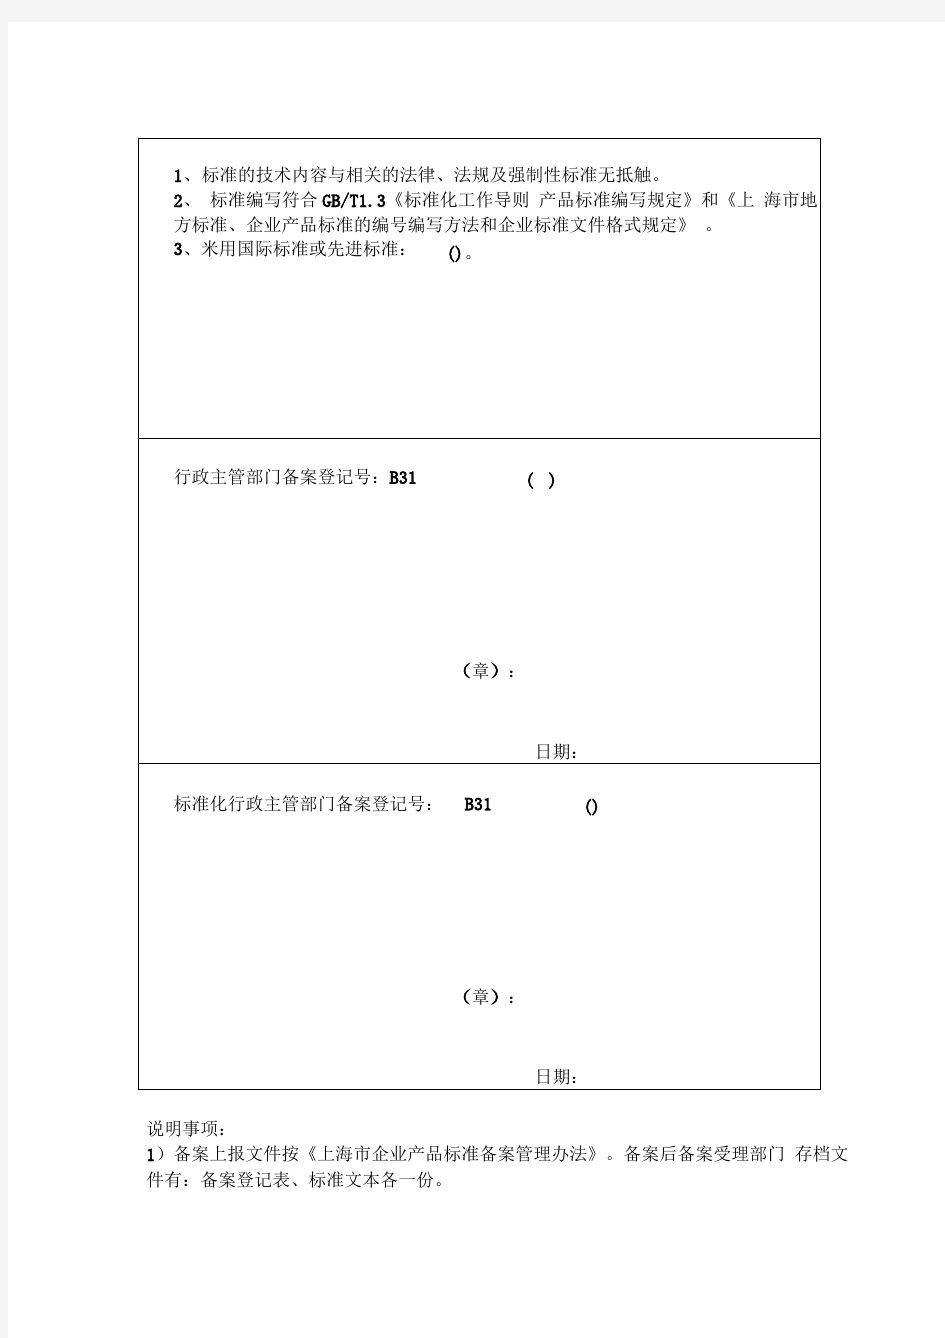 上海市企业产品标准备案登记表表格格式